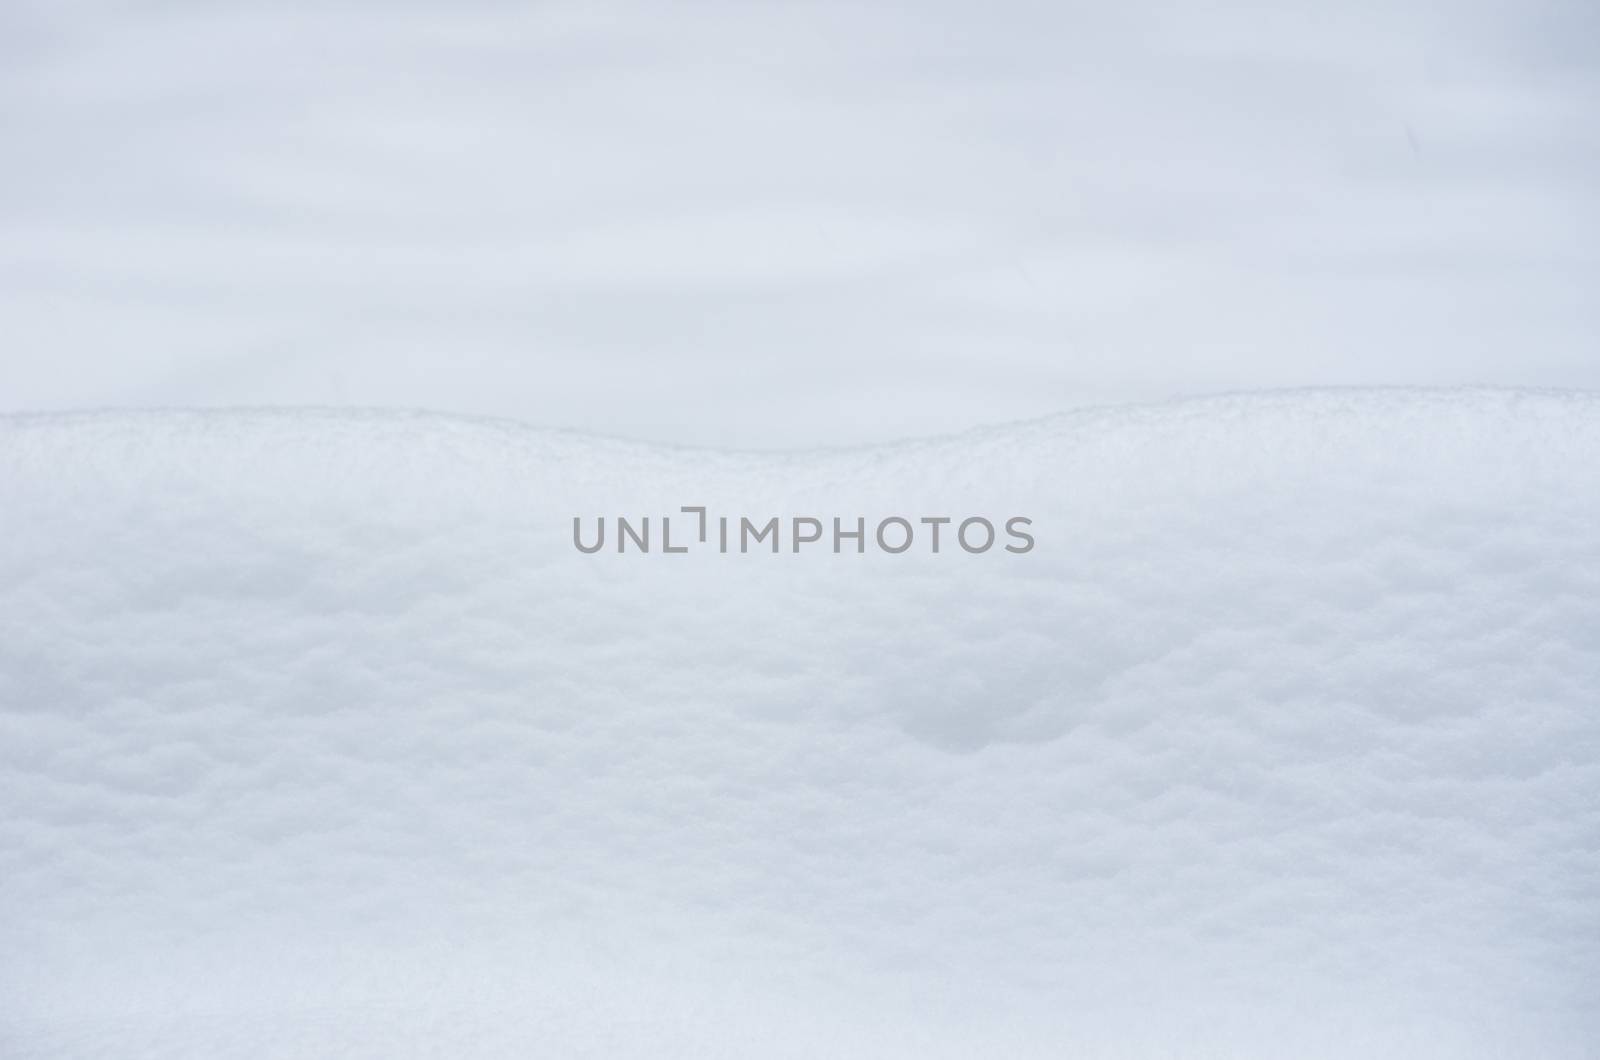  snow texture  by Pakhnyushchyy